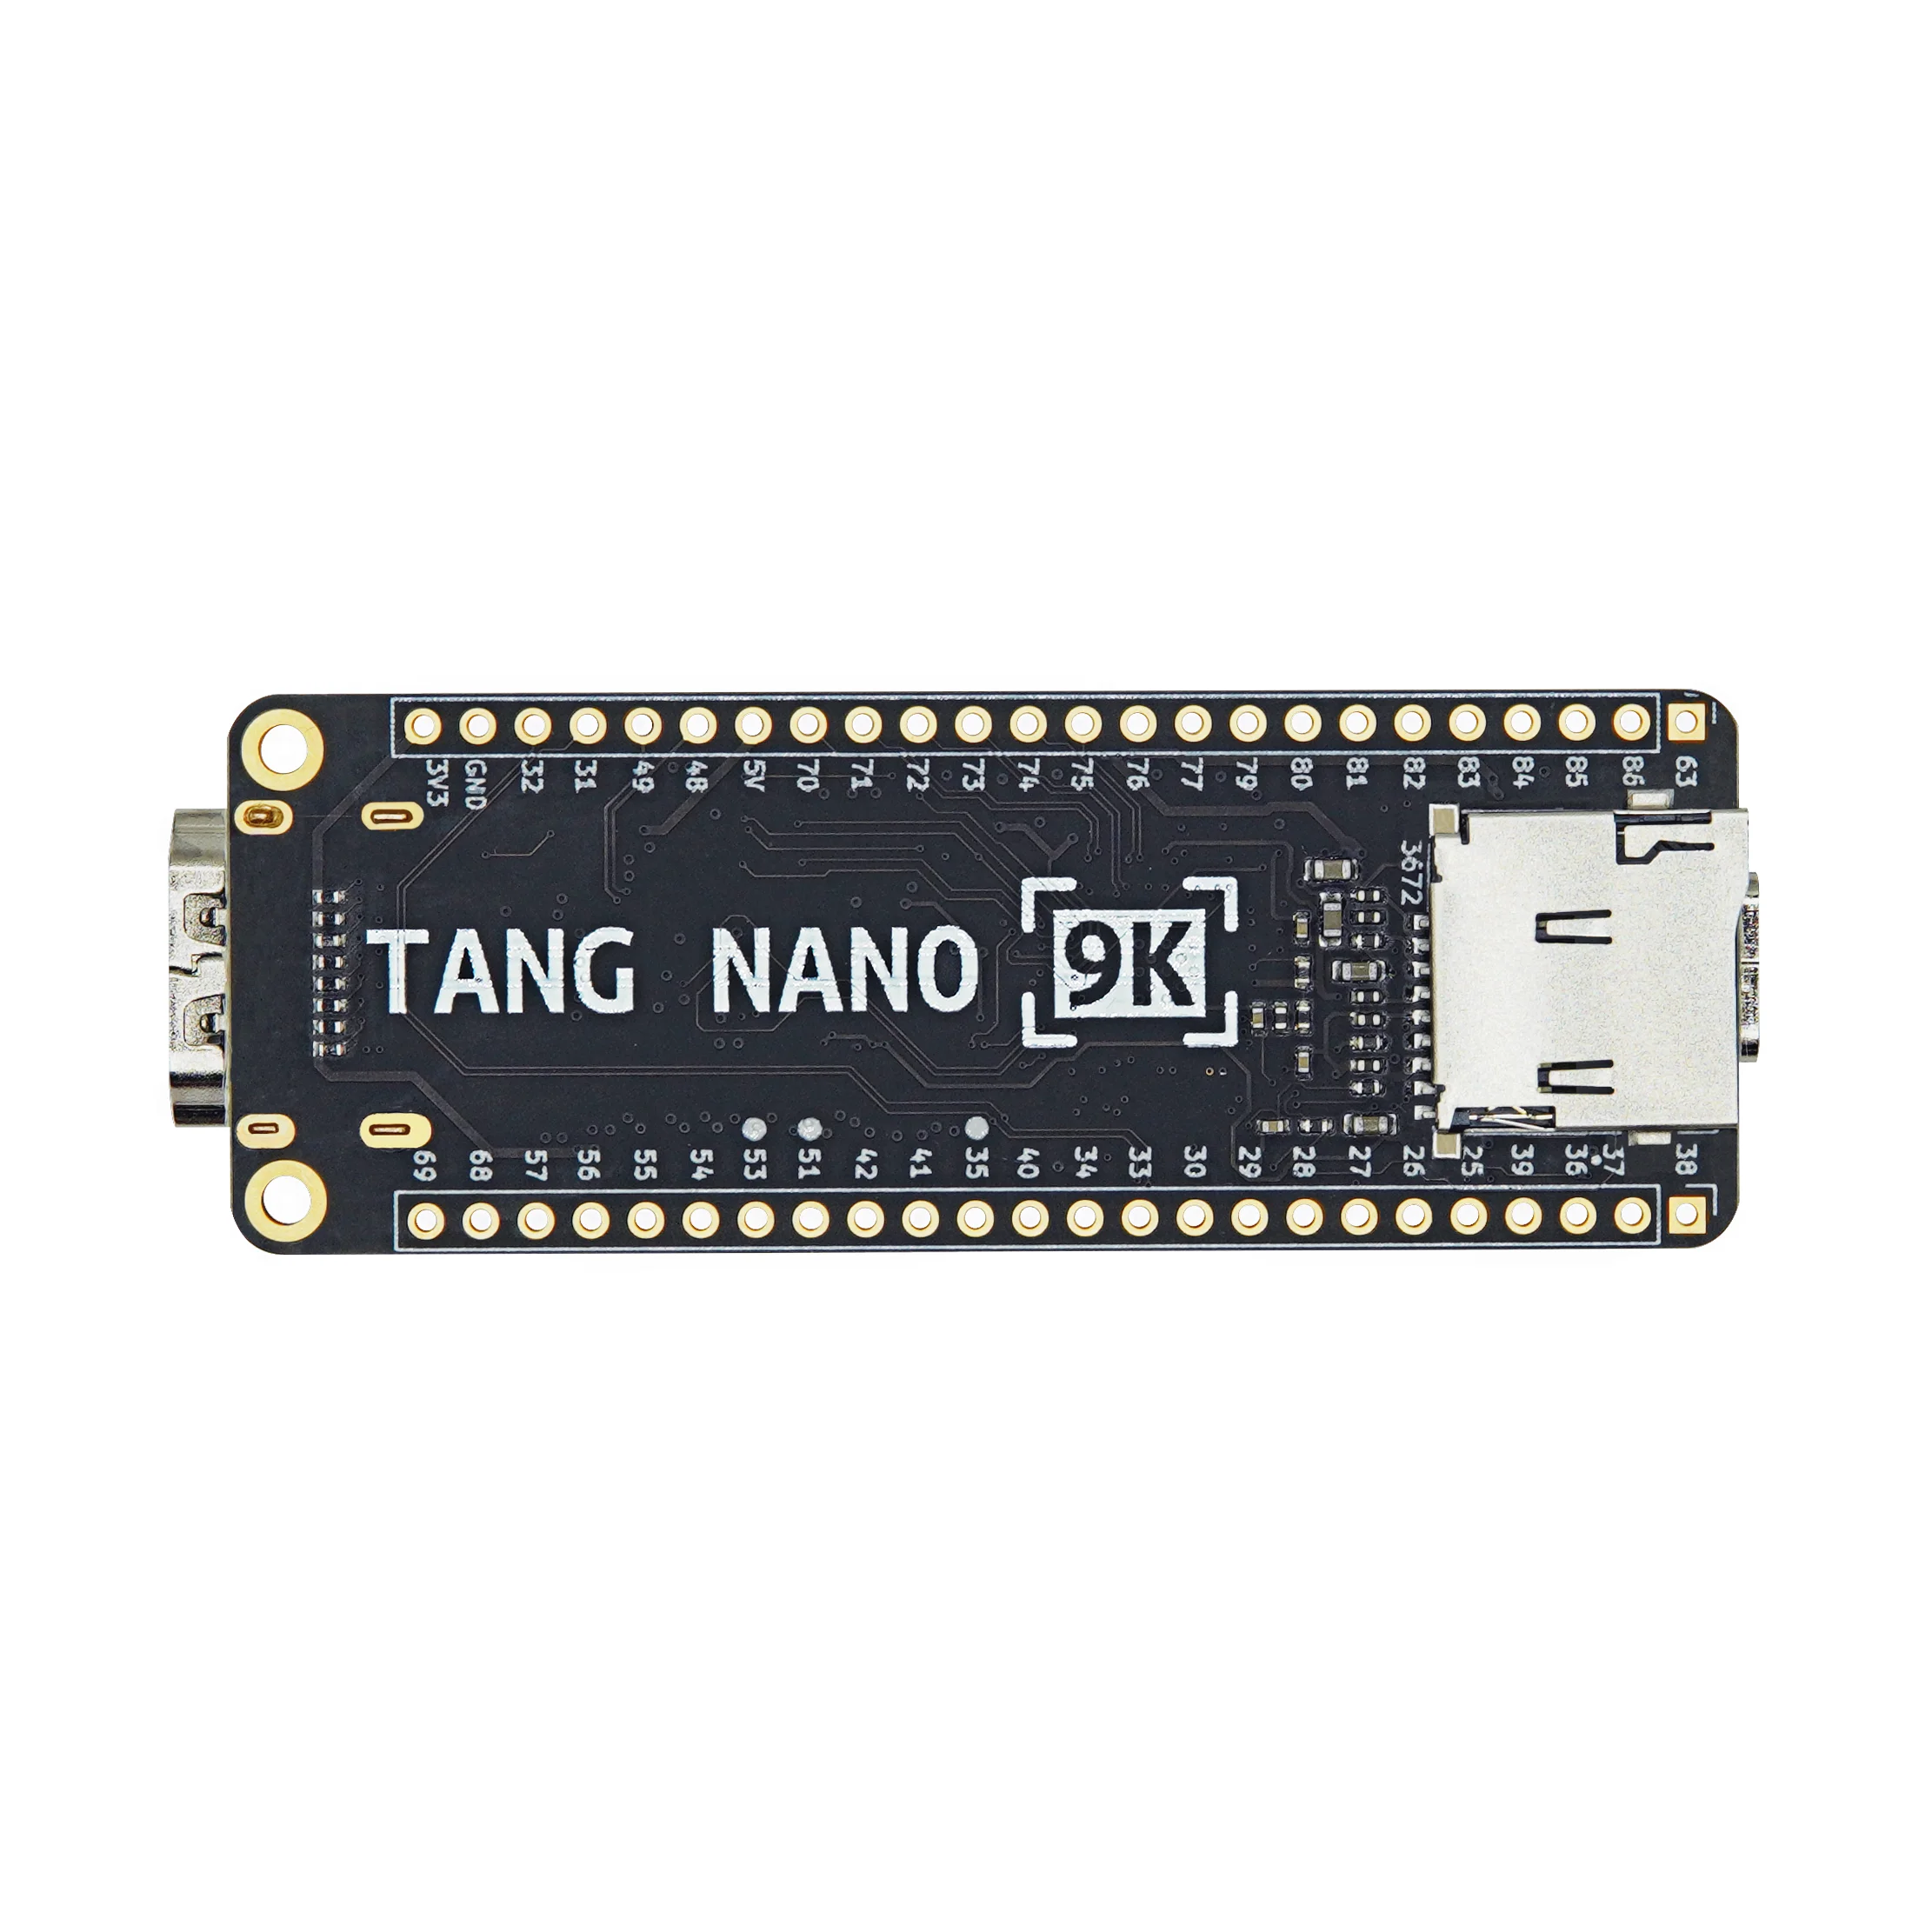 Bo Mạch Fpga Tang Nano 9k: \